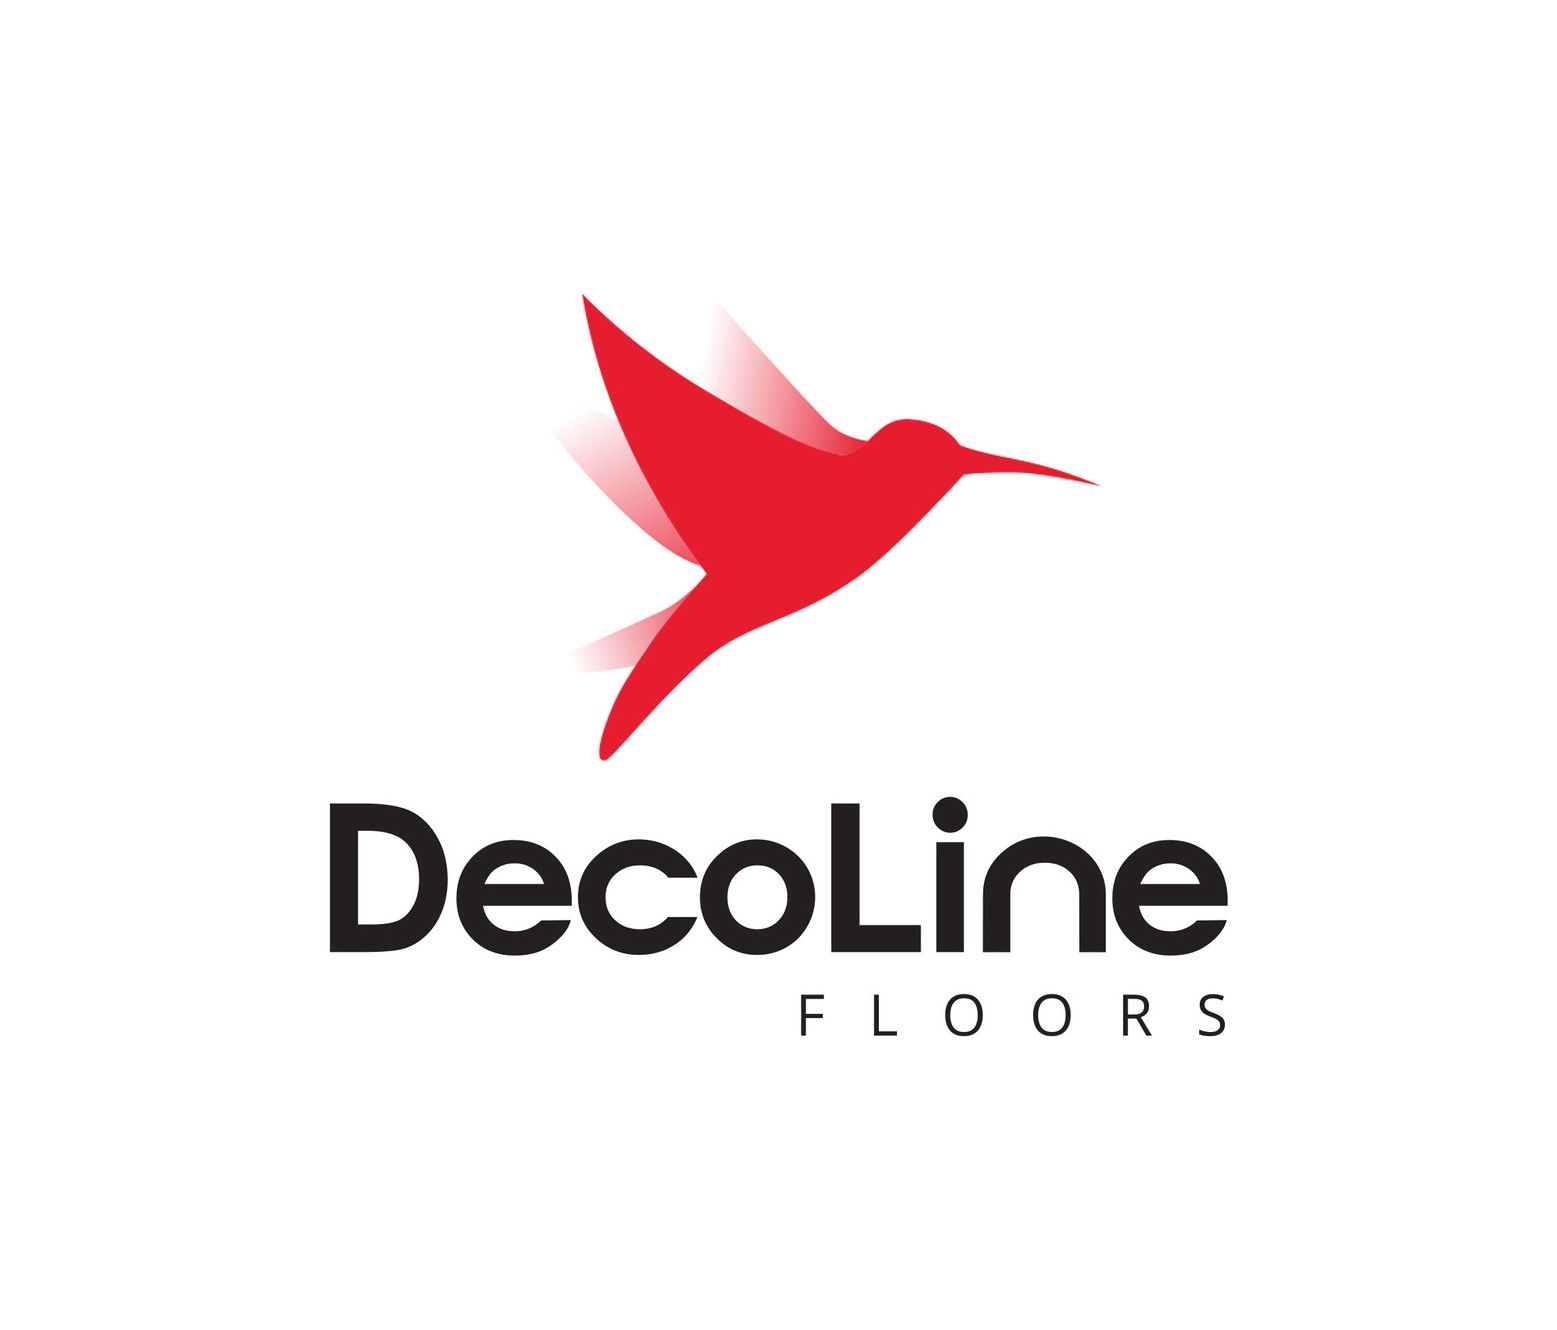 Decoline Floors